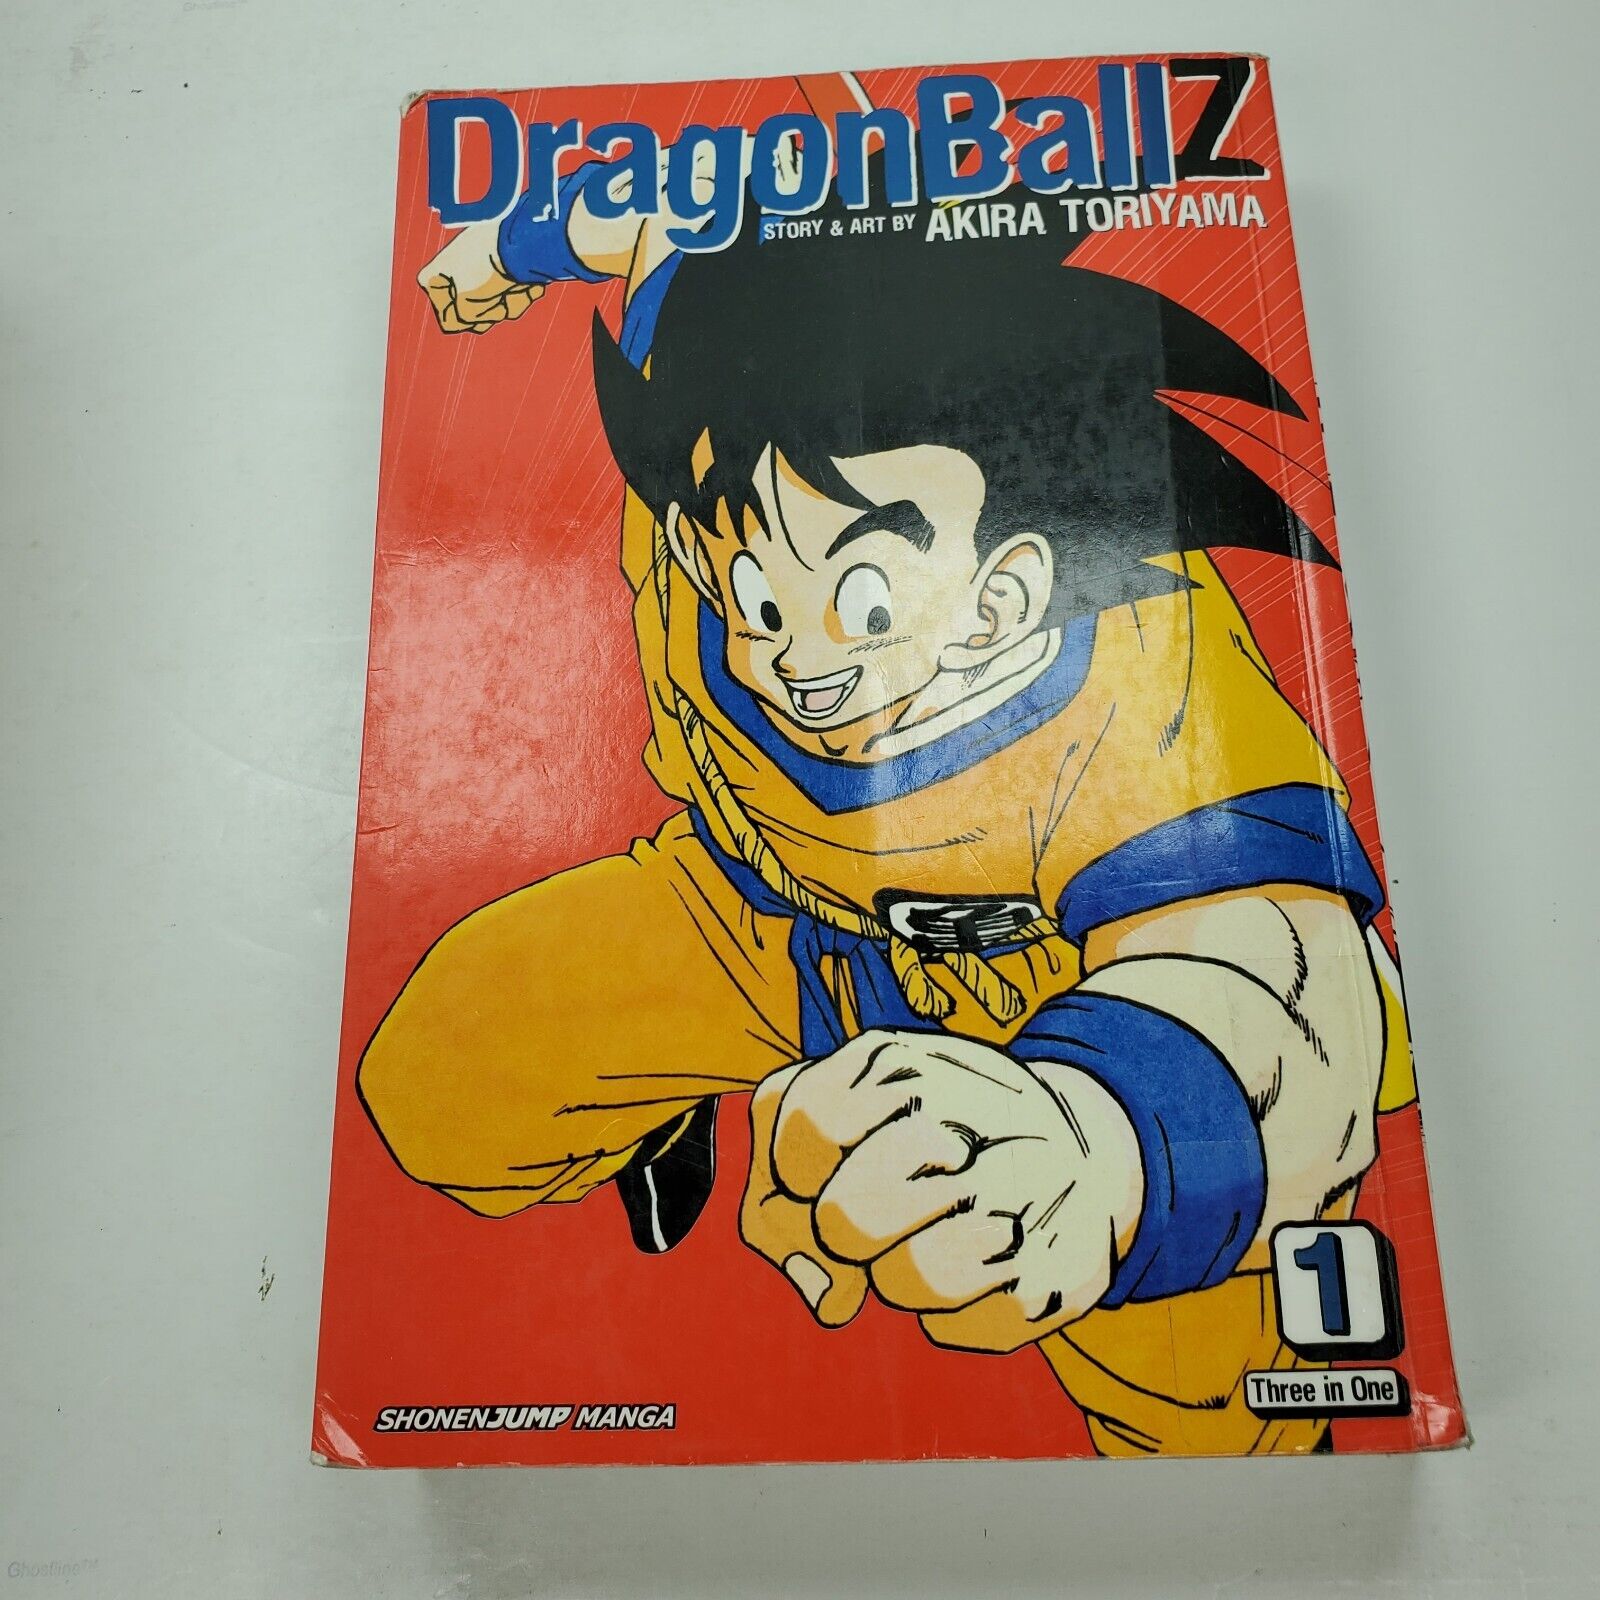 Dragon Ball Z, Vol. 1 (VIZBIG Edition) Shonen Jump Manga Akira Toriyama 1-3 PB